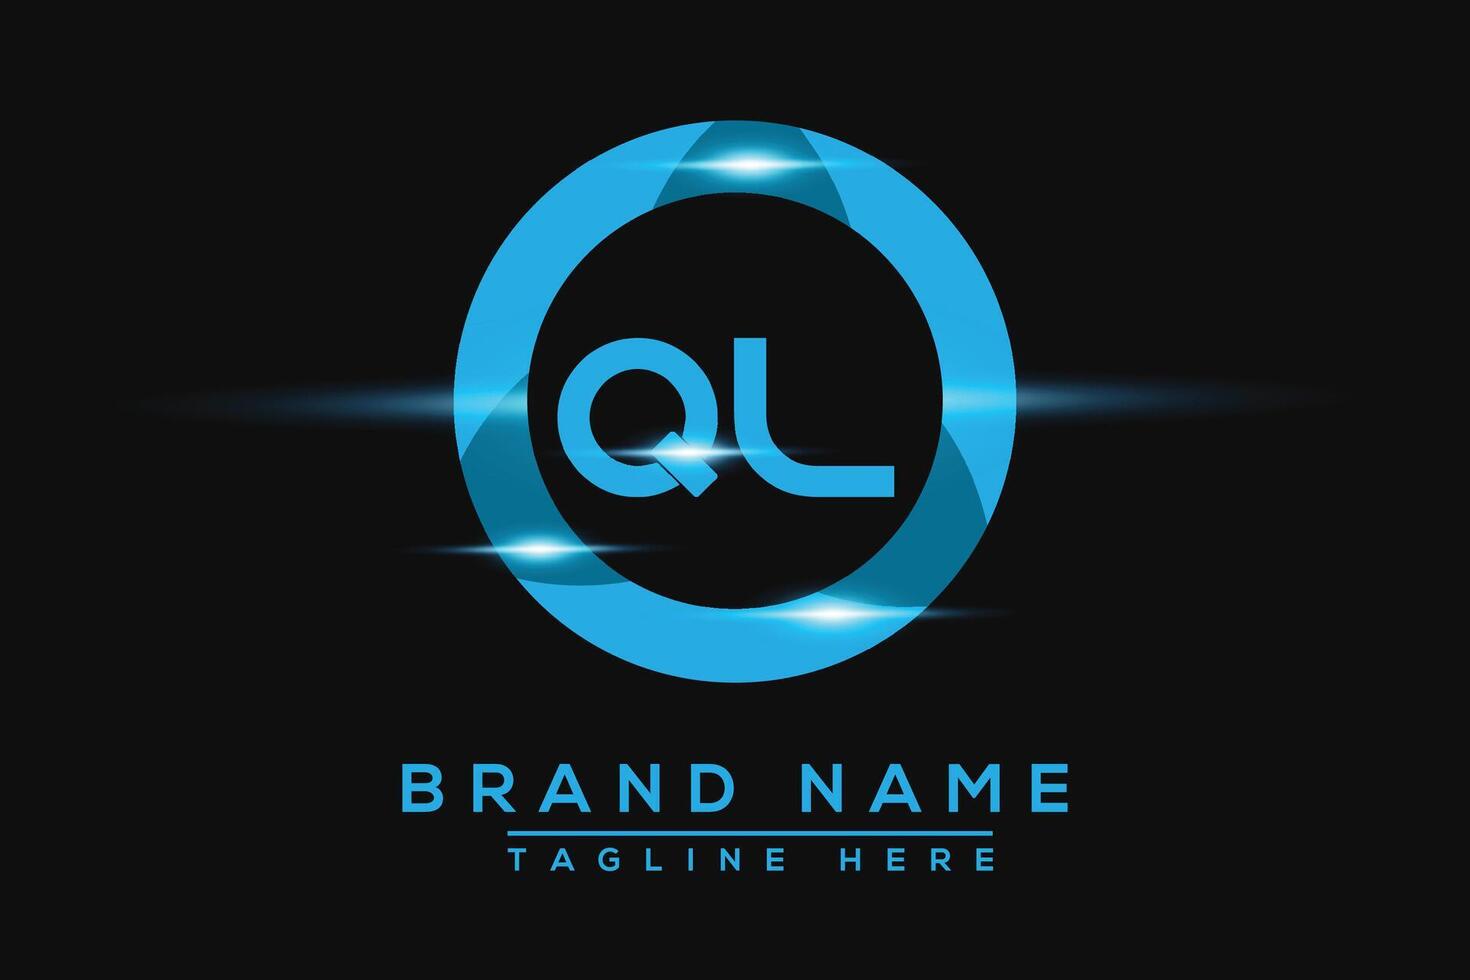 ql blu logo design. vettore logo design per attività commerciale.